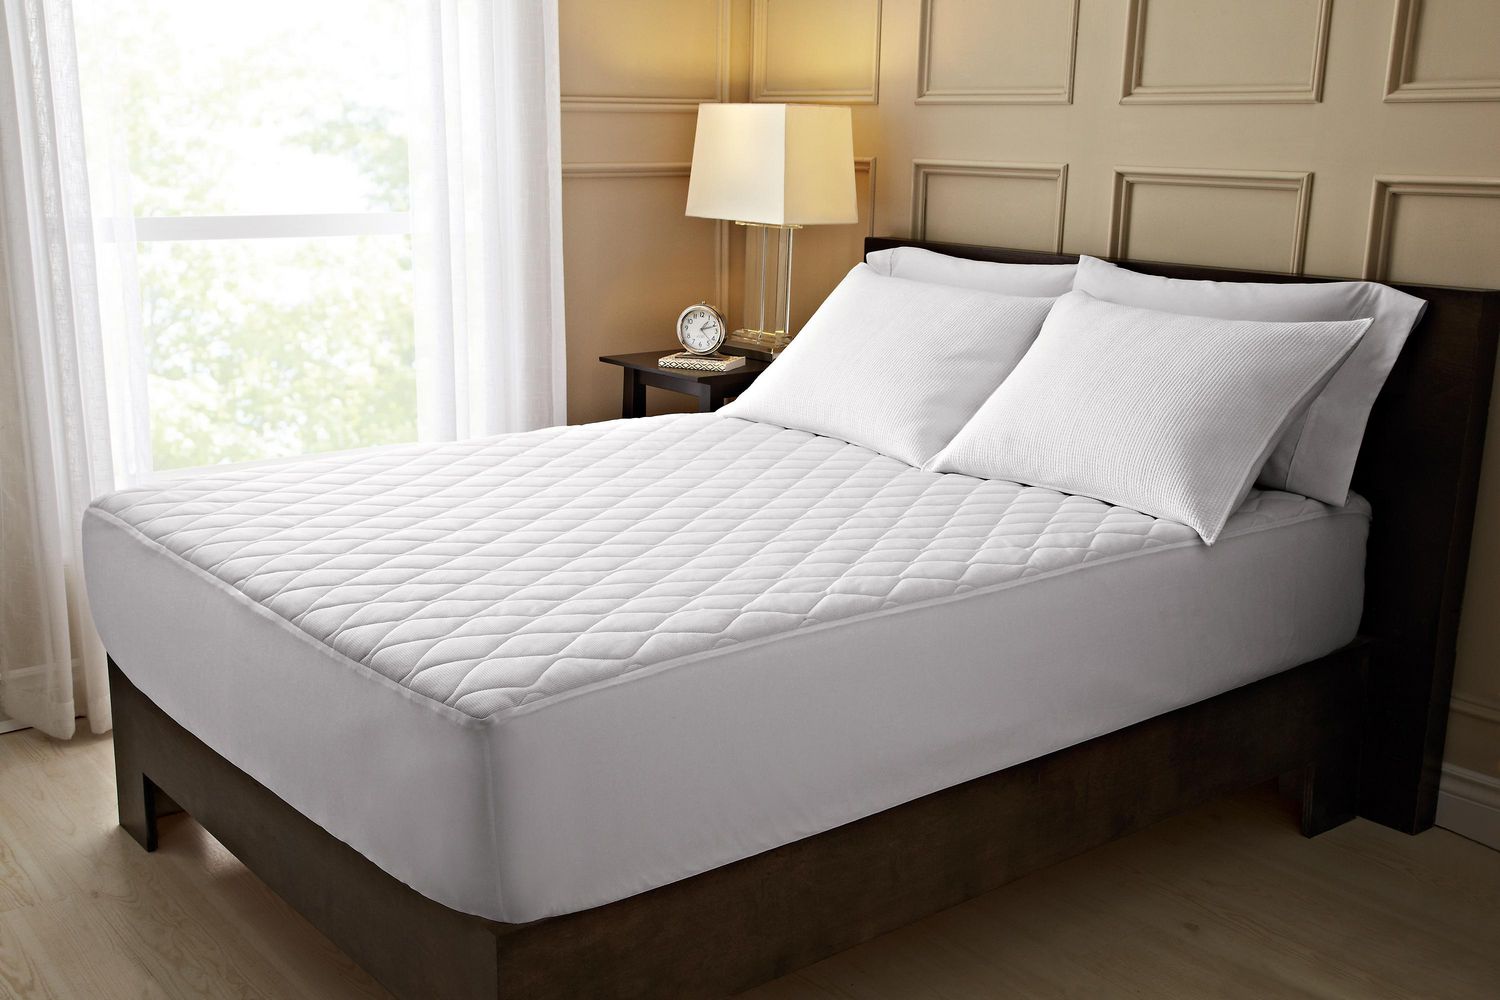 sunbeam theripudic heated mattress pad ful size